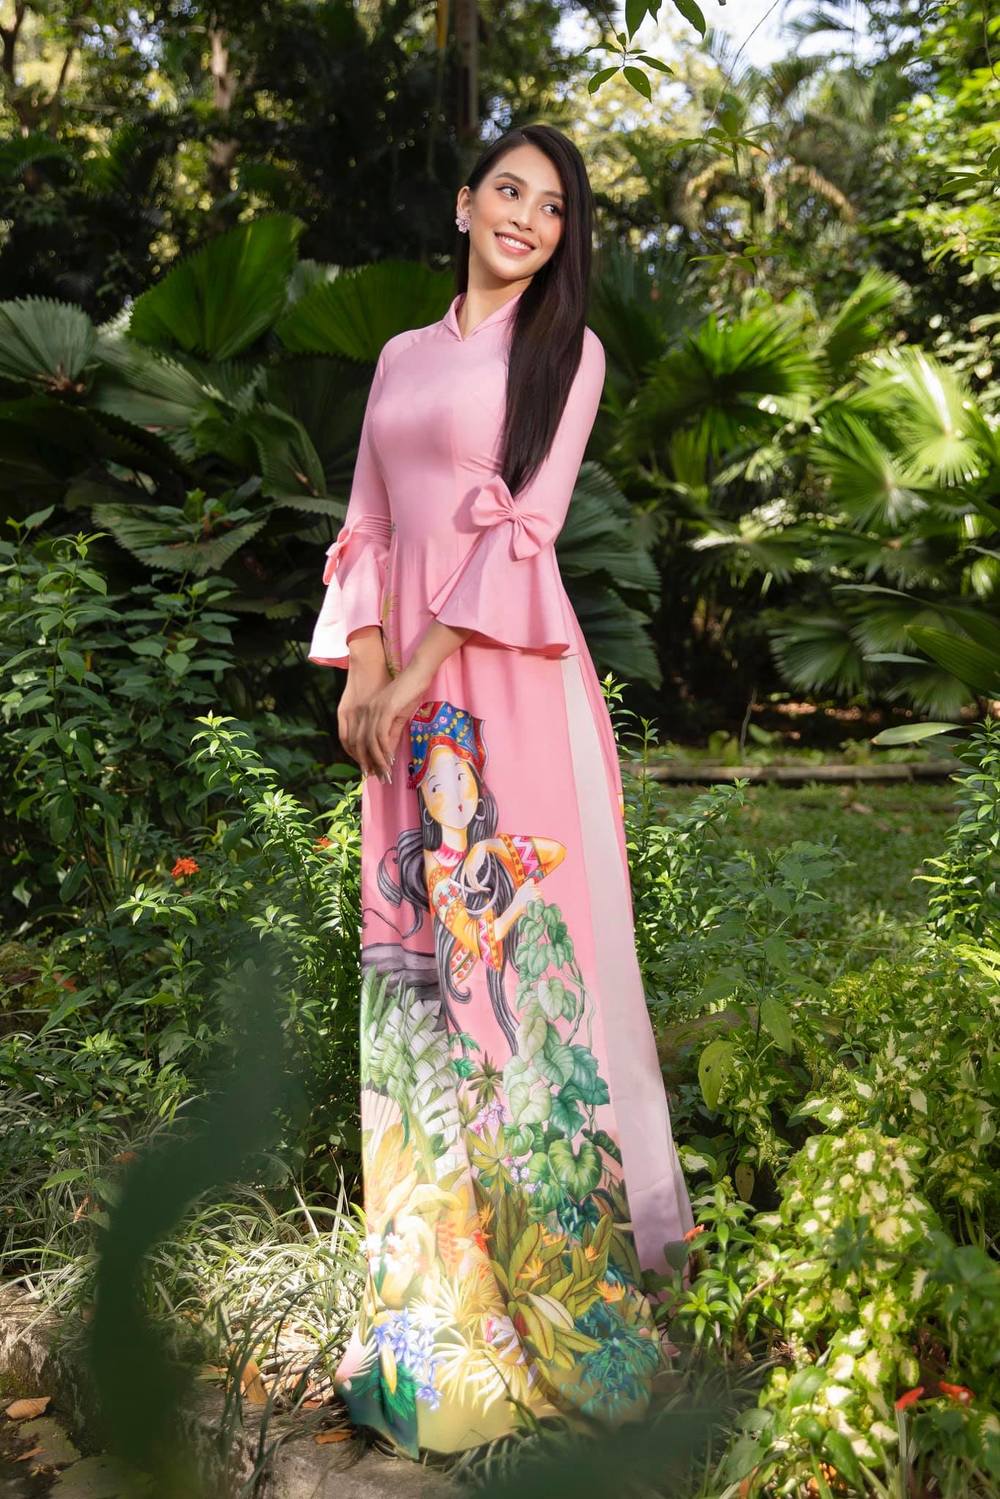  
Với ý tưởng từ vẻ đẹp non nước hữu tình của 3 miền Việt Nam, NTK Ngô Nhật Huy đã tinh tế lồng ghép vào những tà áo dài hình ảnh thiếu nữ Việt dịu dàng trong độ tuổi xuân thì (Ảnh: NVCC).